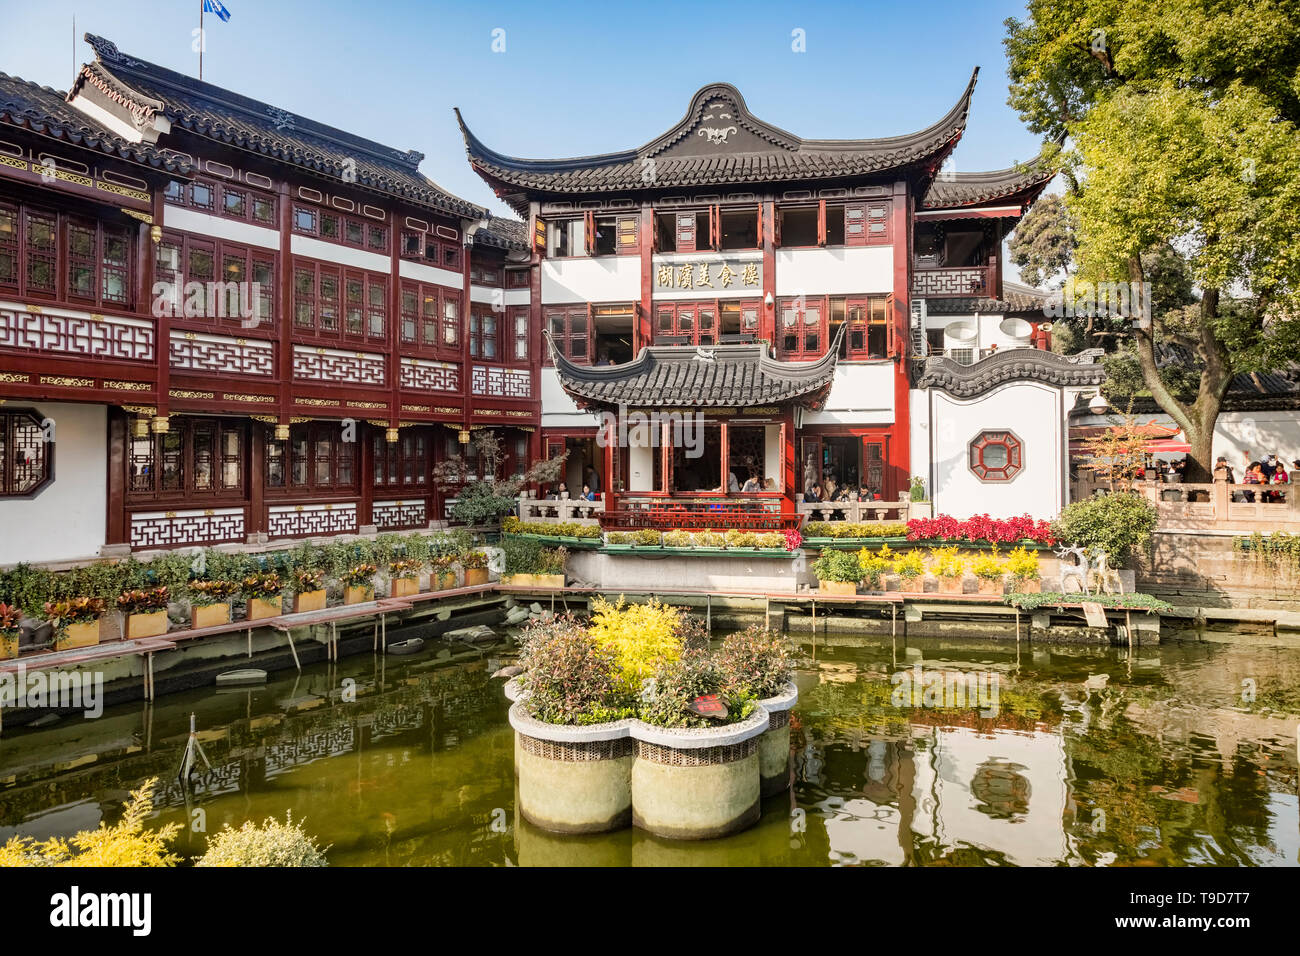 29 de noviembre de 2018: Shanghai, China - Lago en el Jardín Yu del distrito de la ciudad vieja, una importante atracción turística. Foto de stock